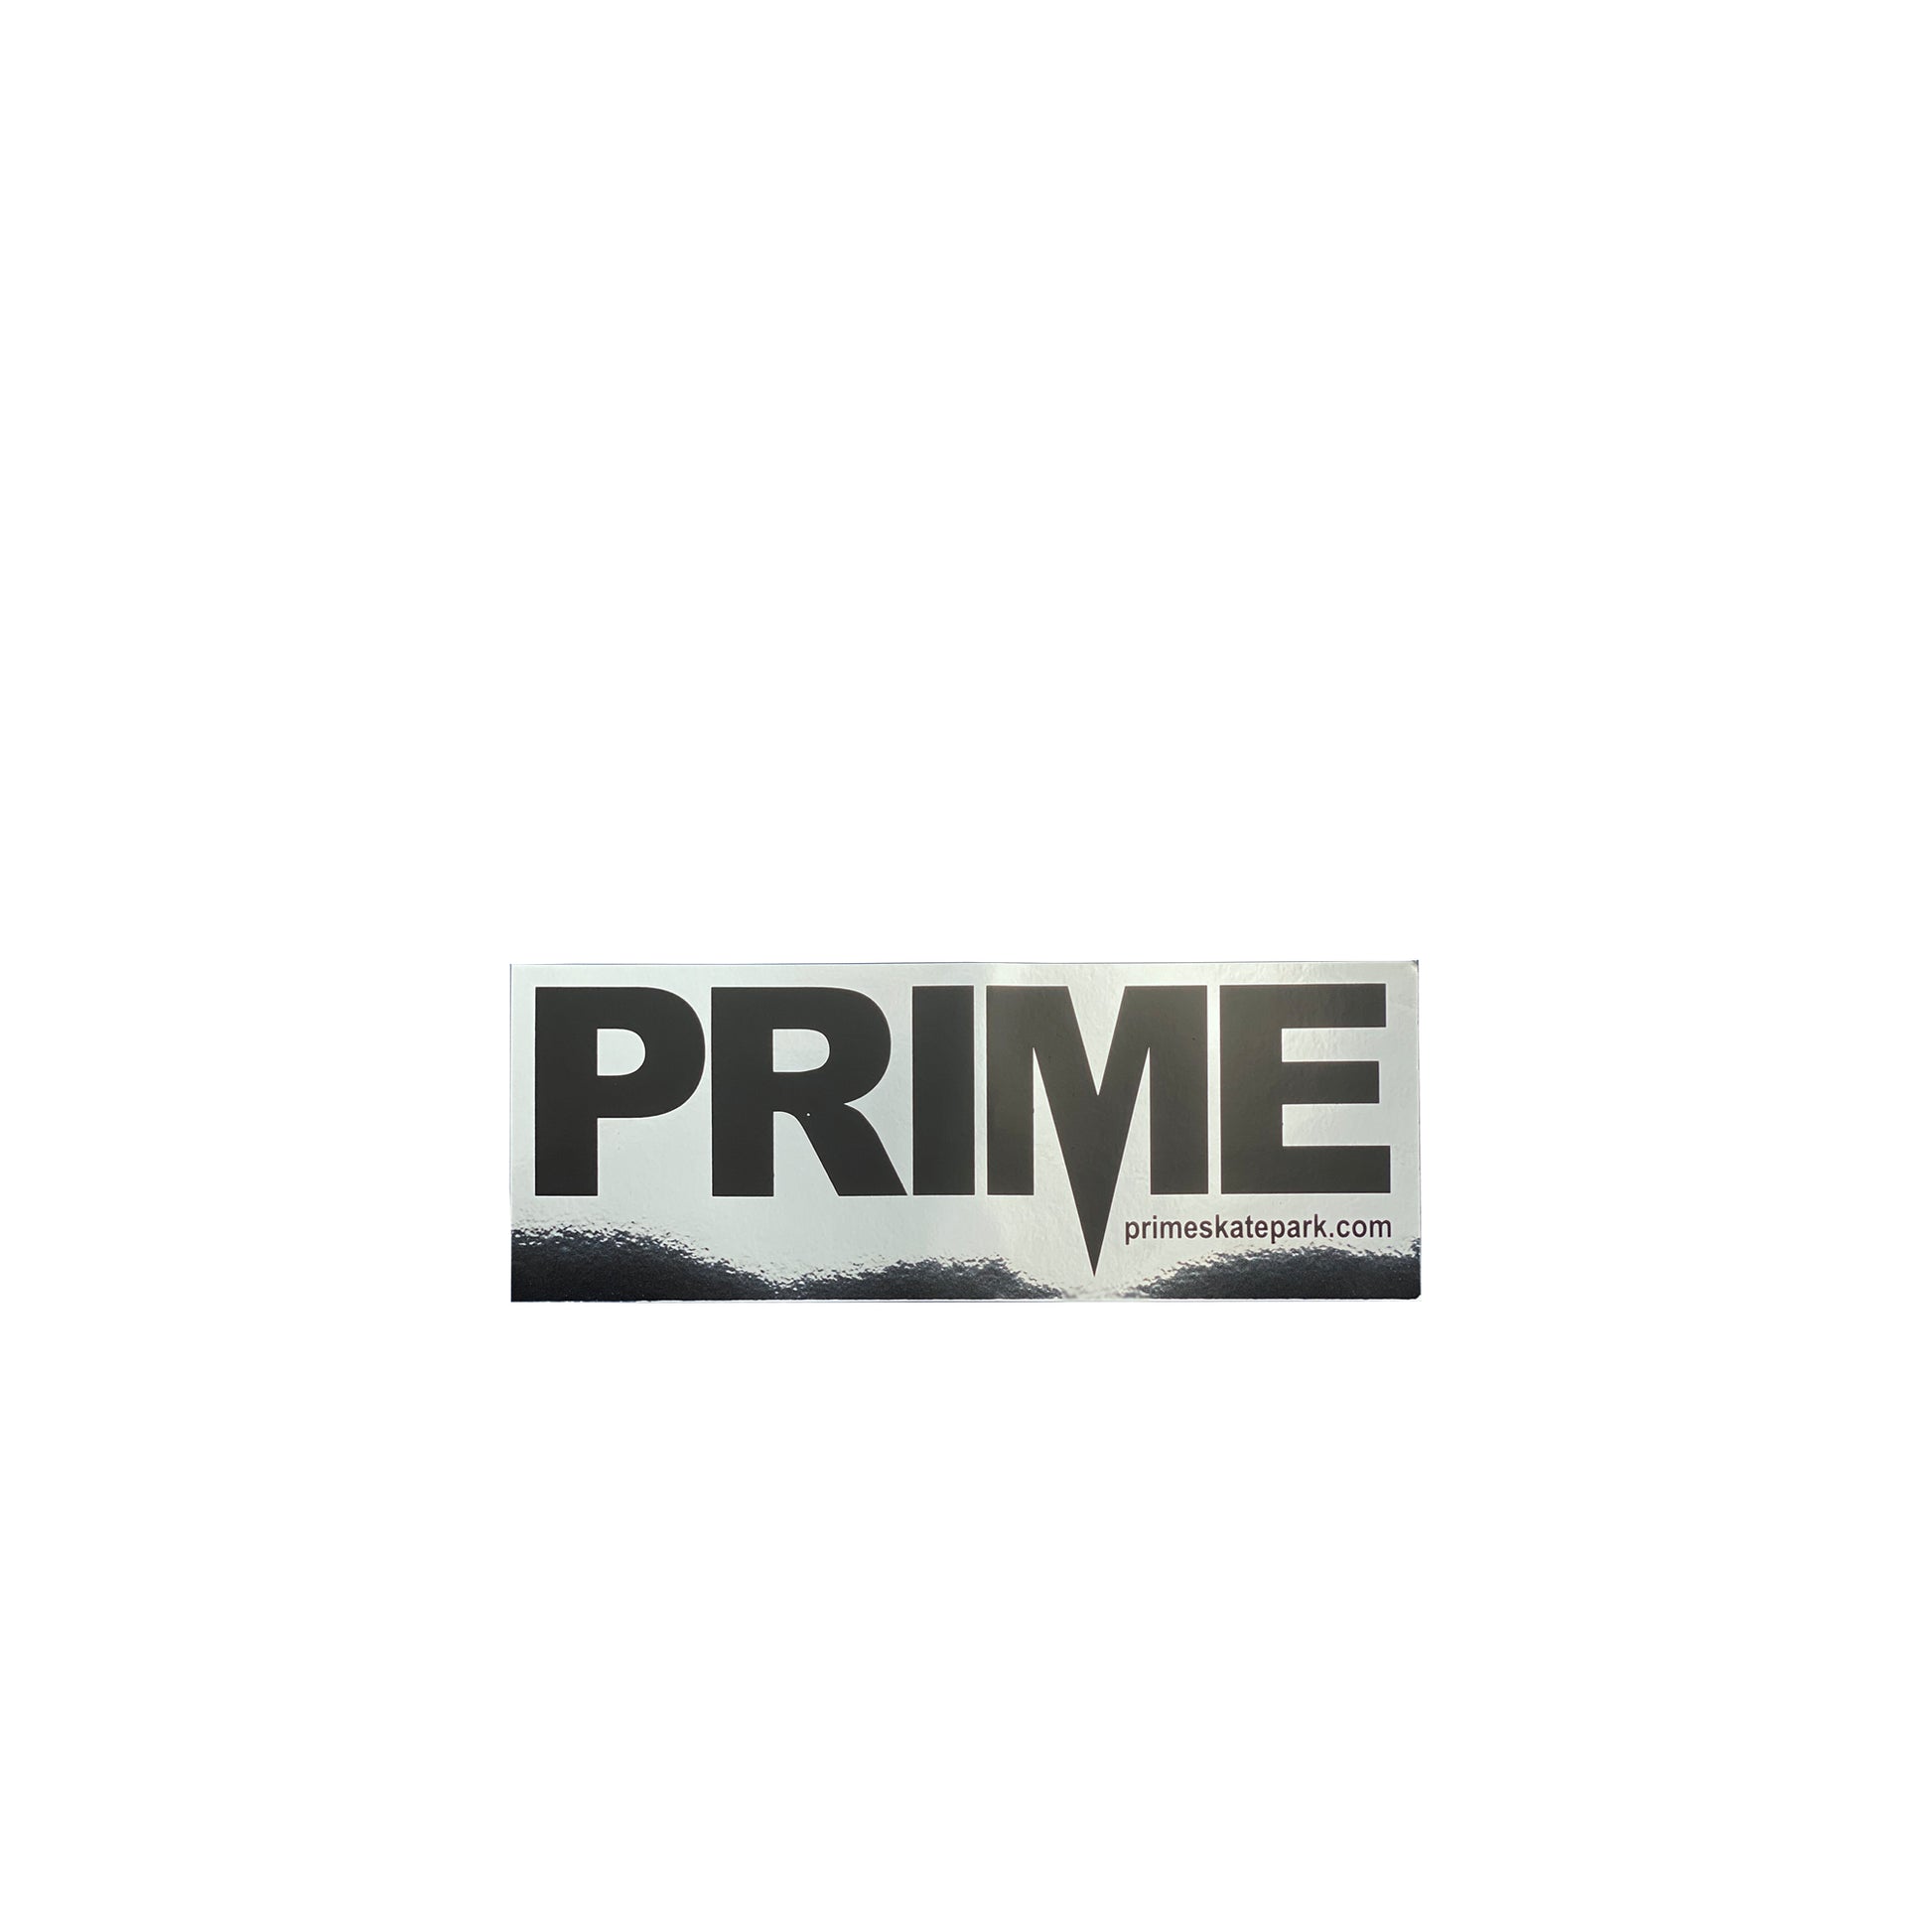 Prime Delux OG SP Sticker M - Black / Foil Silver - Prime Delux Store